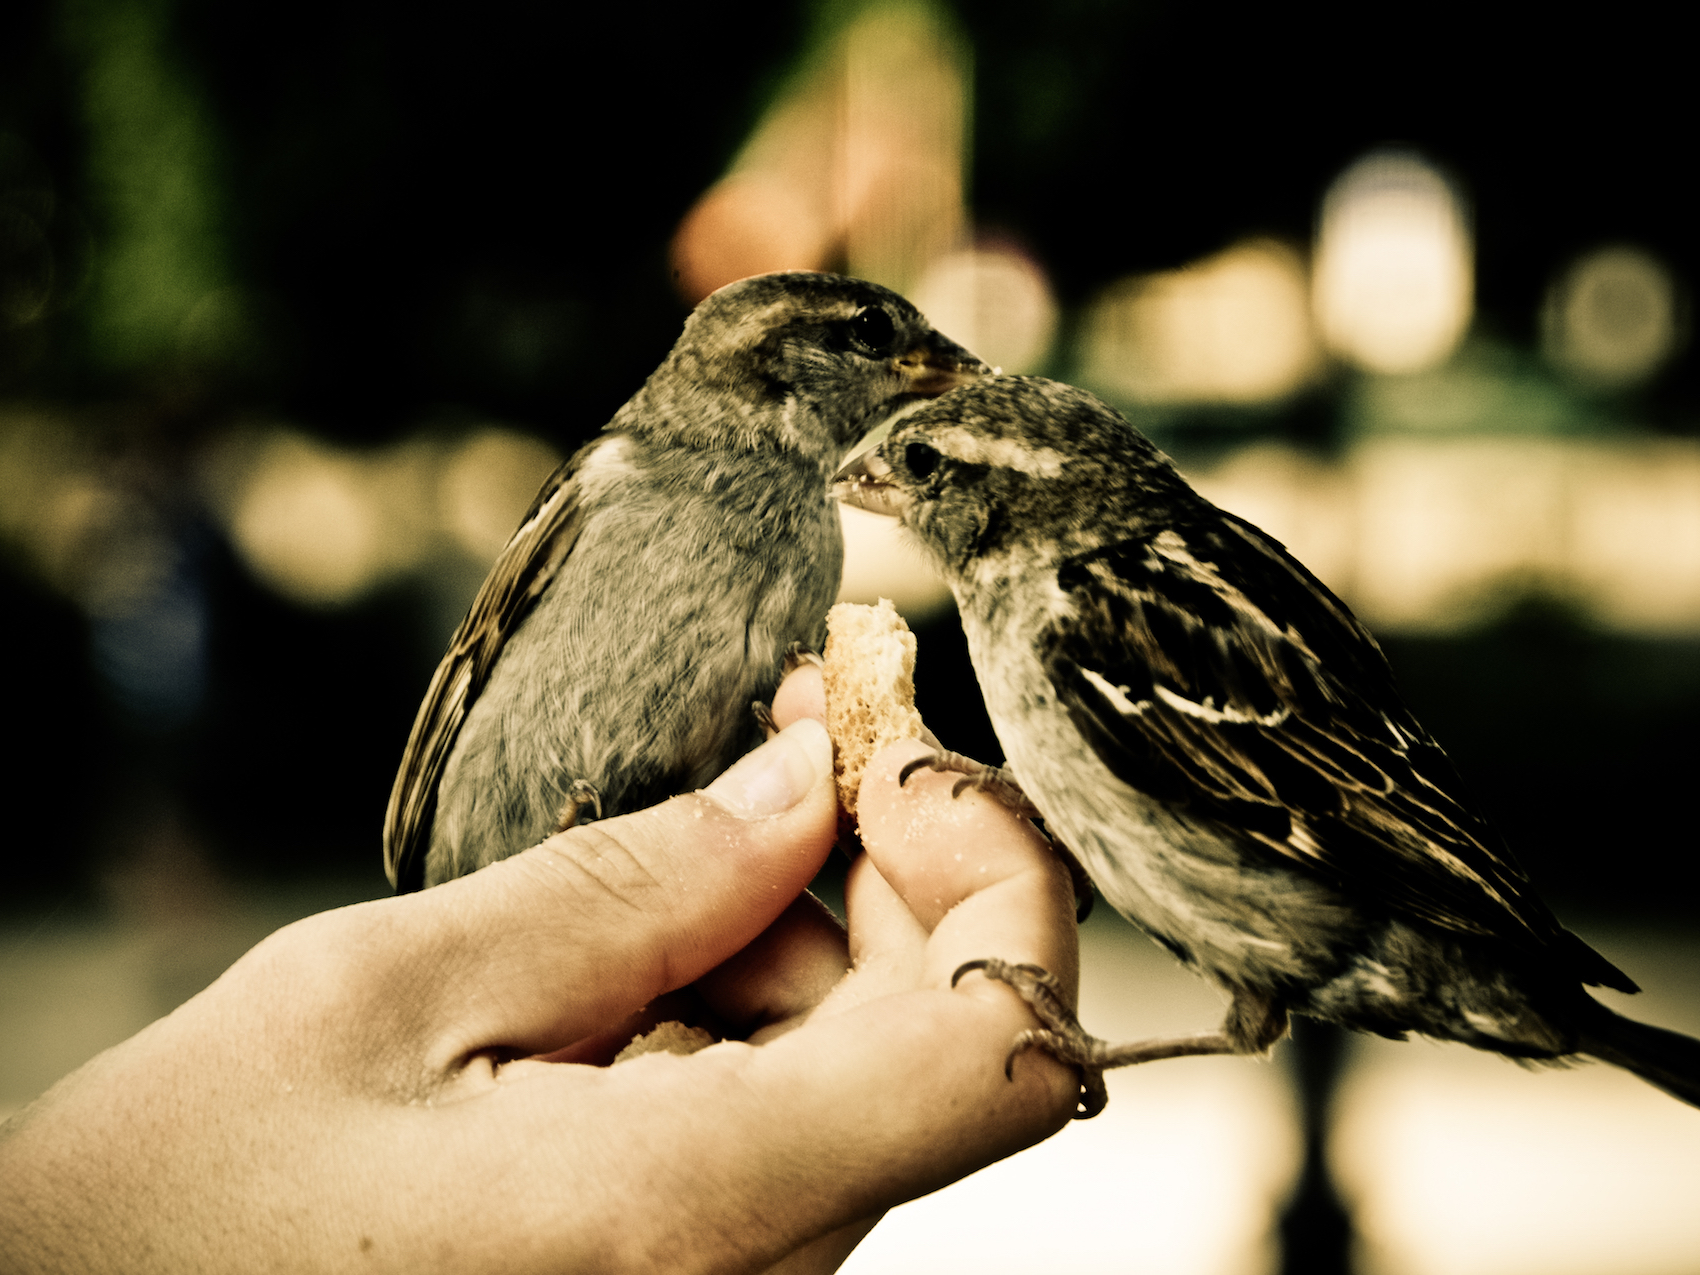 "Sparrows" photo by pasczak000 CC BY-SA 2.0